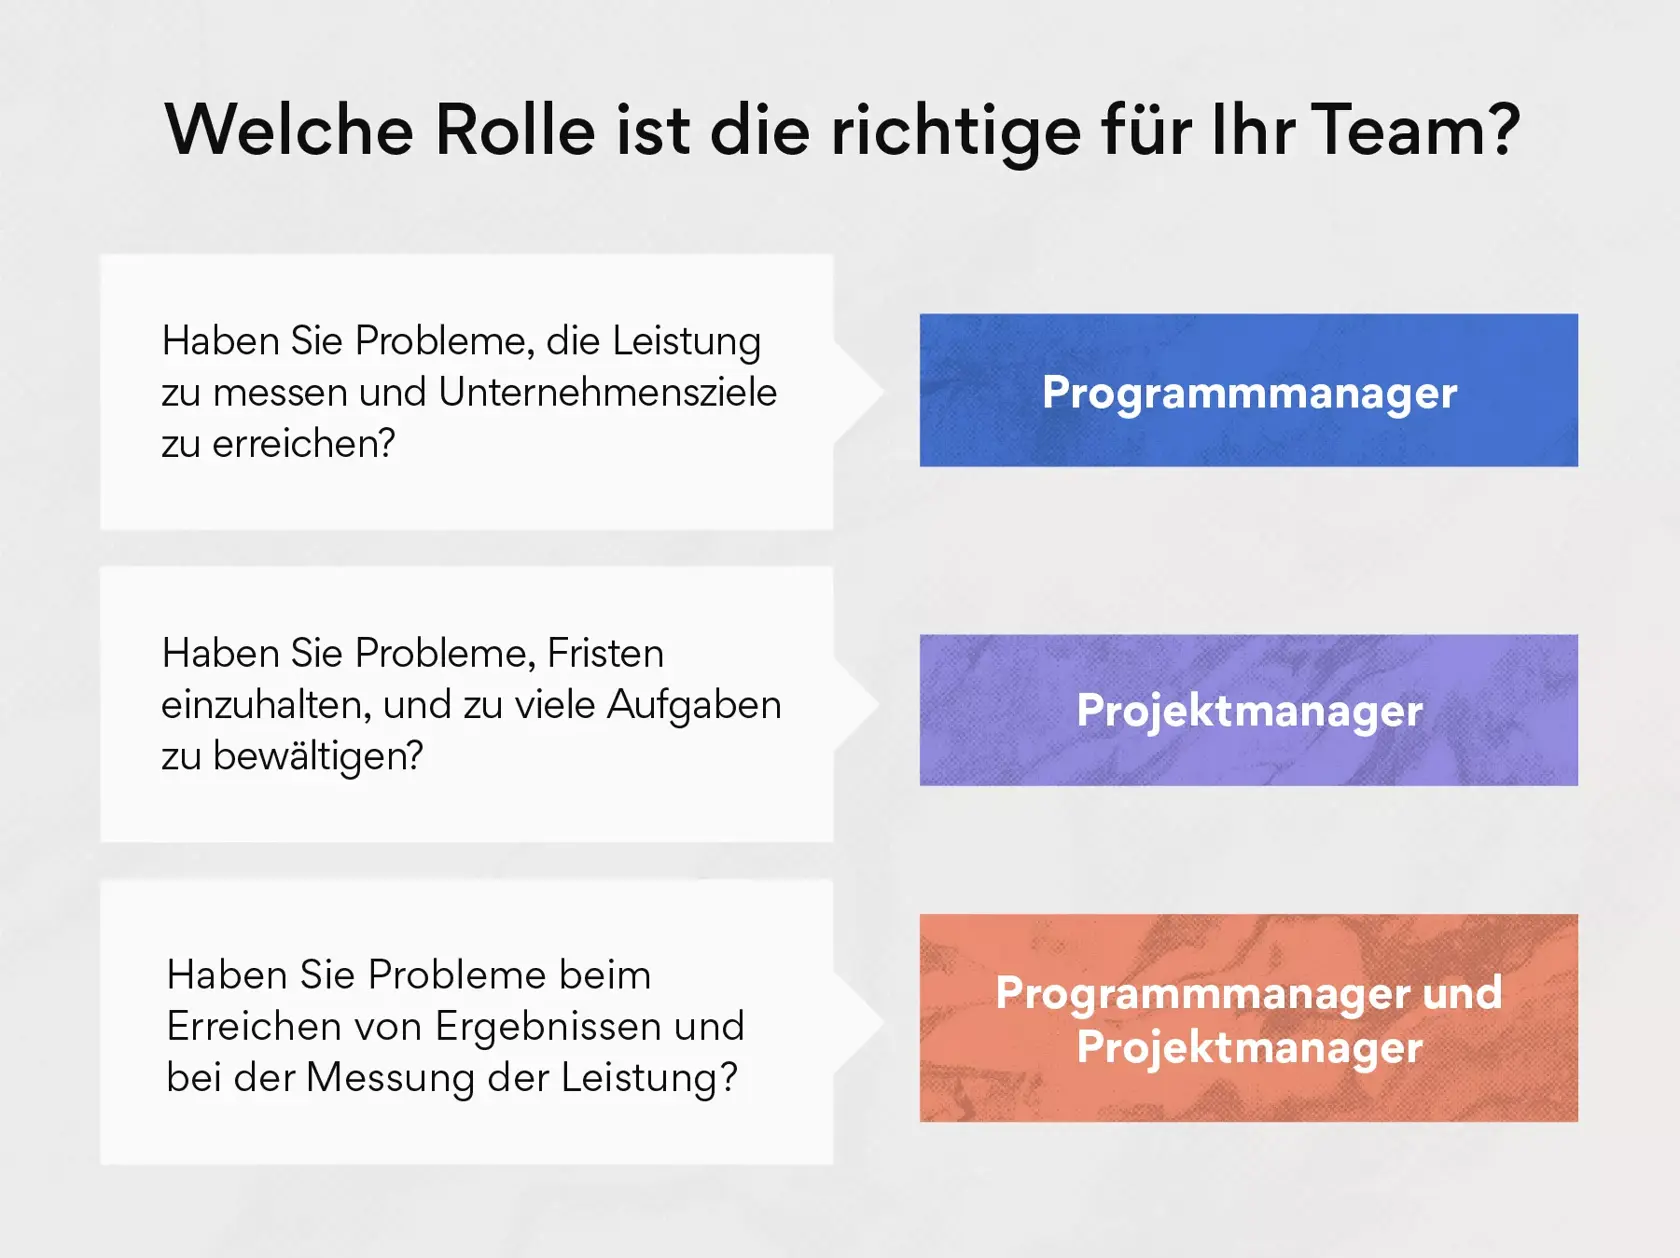 Welche Rolle bzw. Position ist die richtige für Ihr Team? Programmmanager oder Projektmanager?